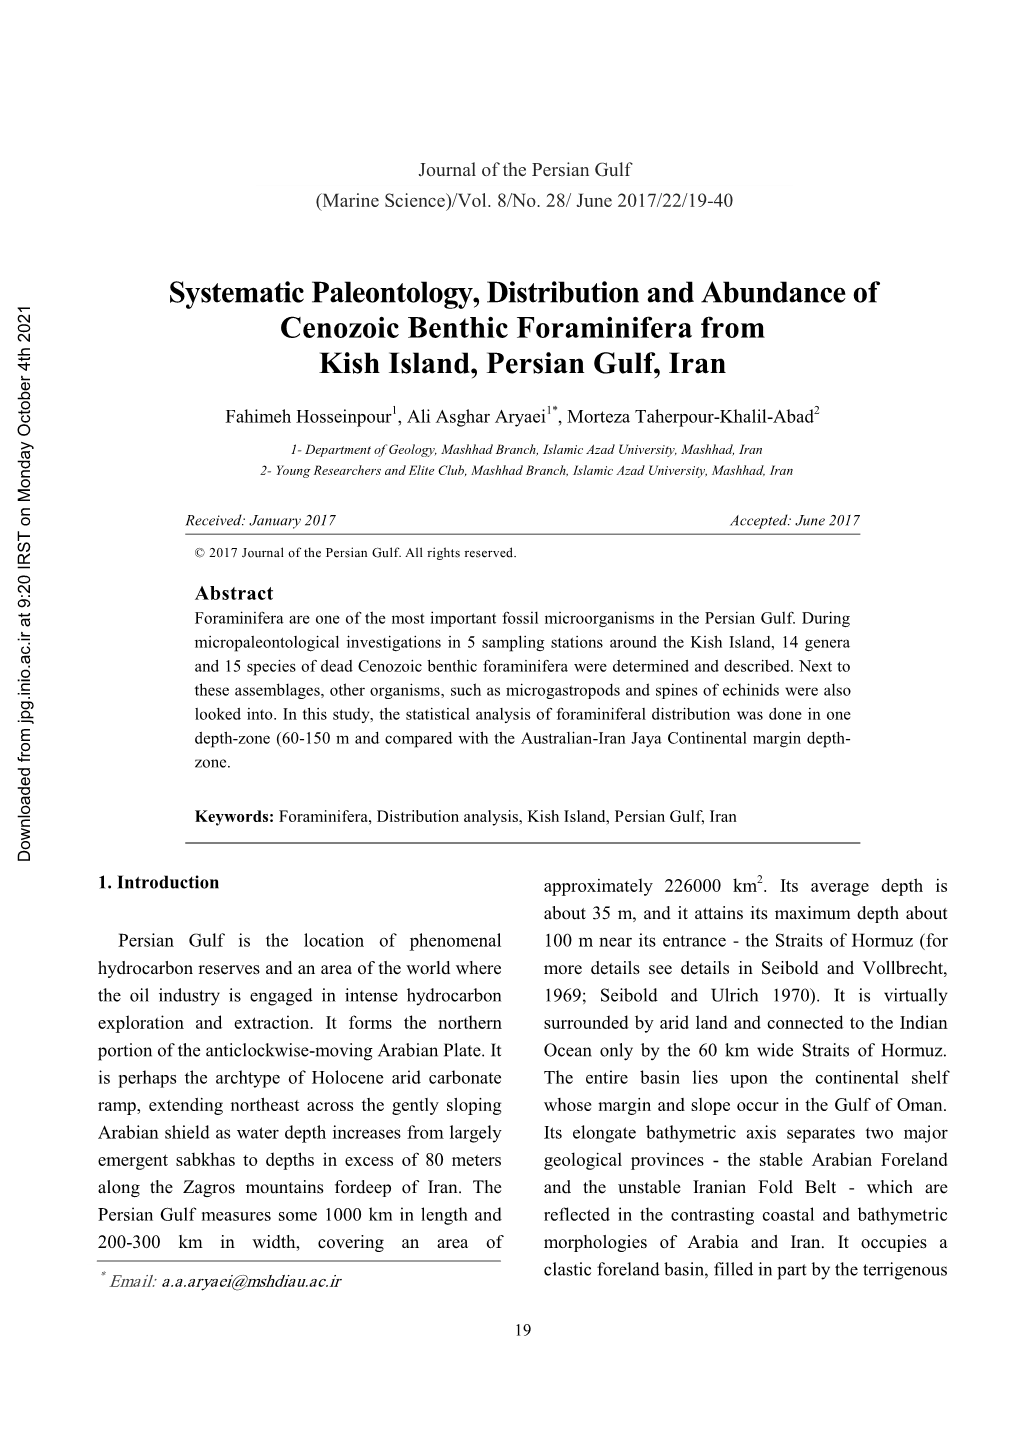 Systematic Paleontology, Distribution and Abundance of Cenozoic Benthic Foraminifera from Kish Island, Persian Gulf, Iran